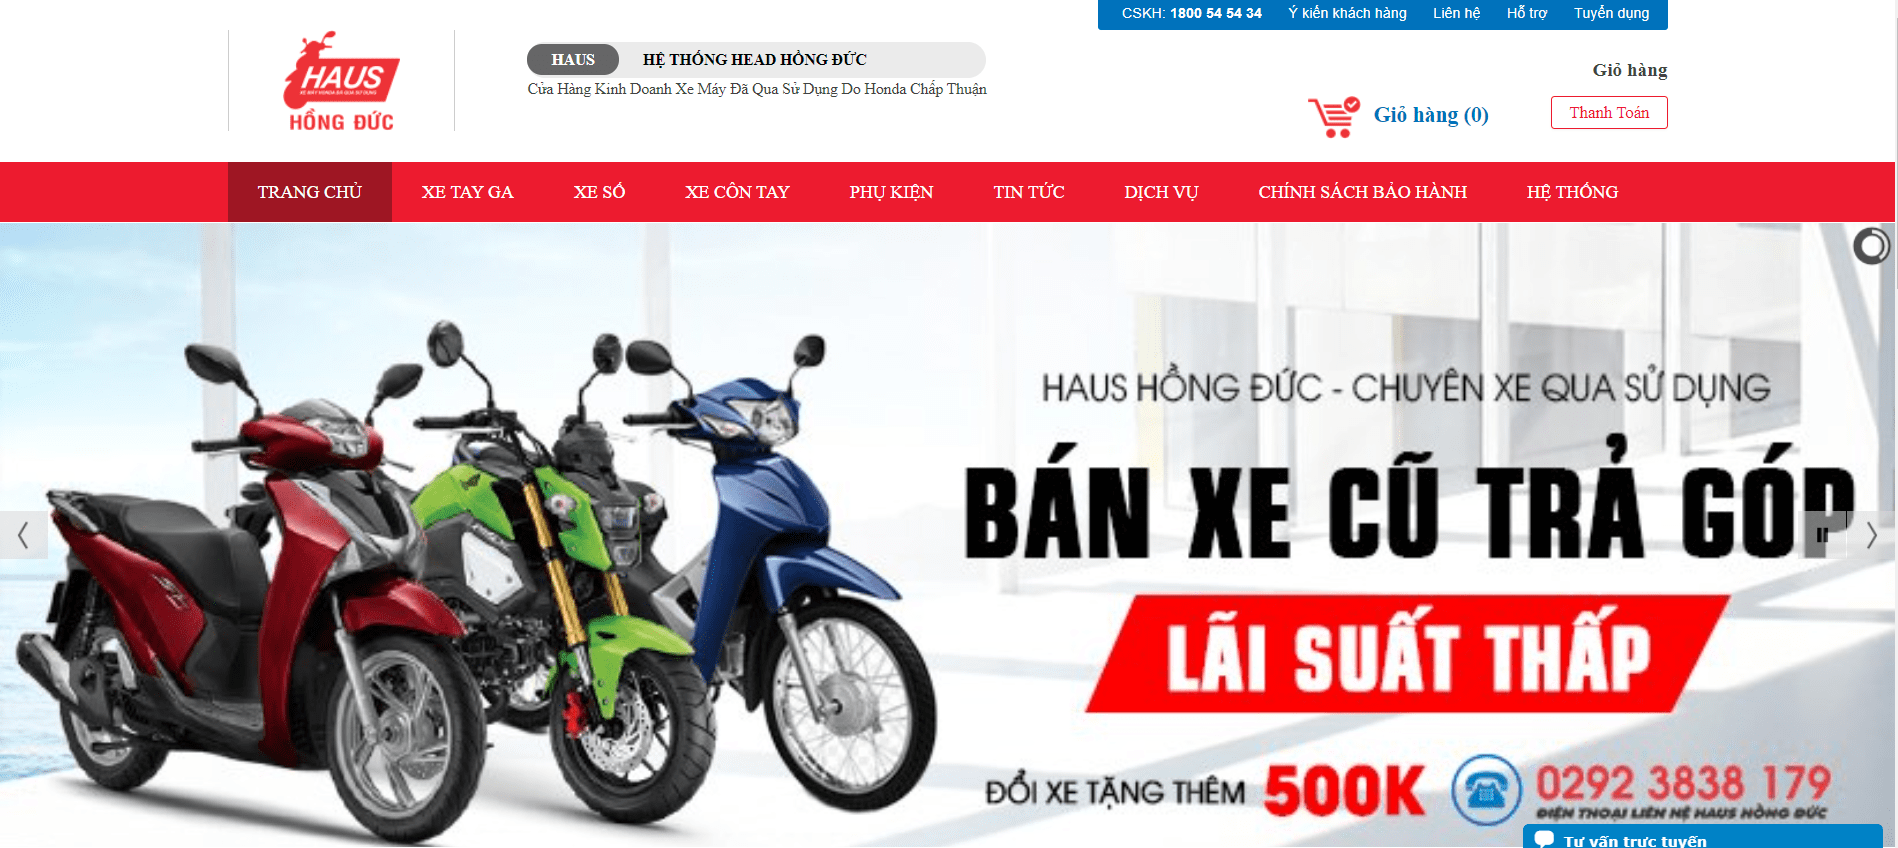 Mua bán xe ô tô Honda cũ tại Hồ Chí Minh F2AutoSaiGon